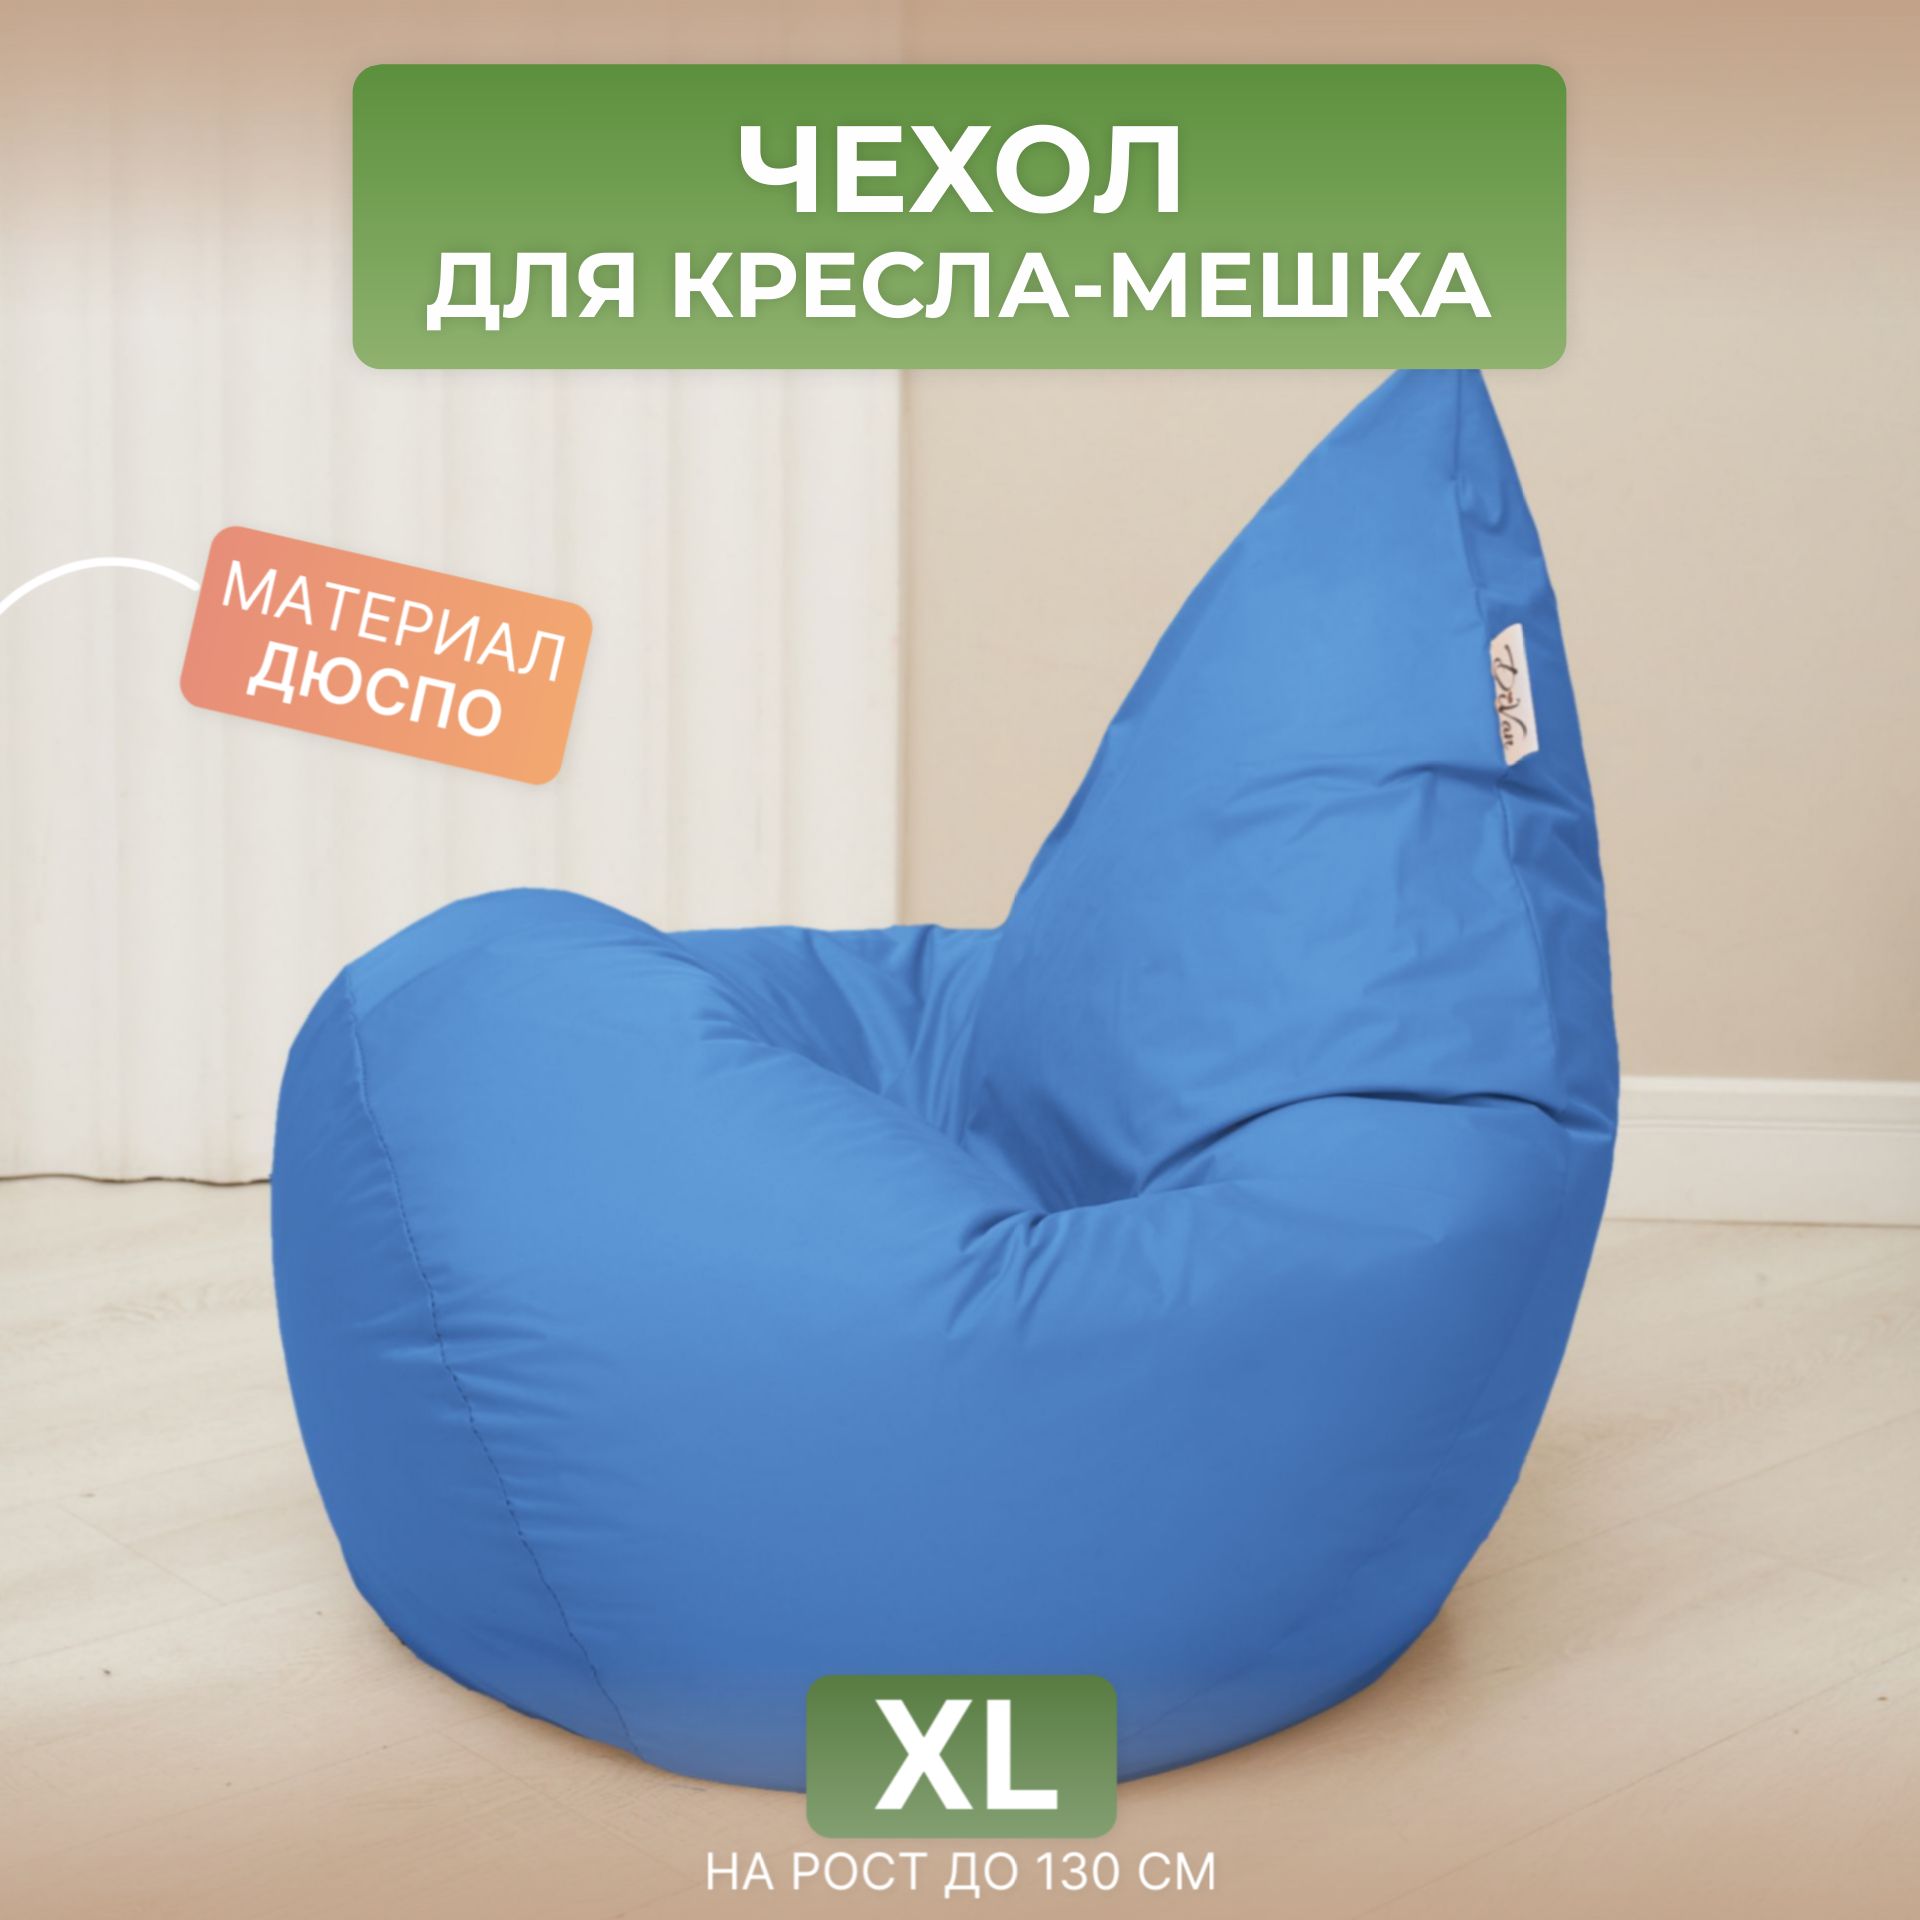 Чехол для кресла-мешка Divan XL голубой